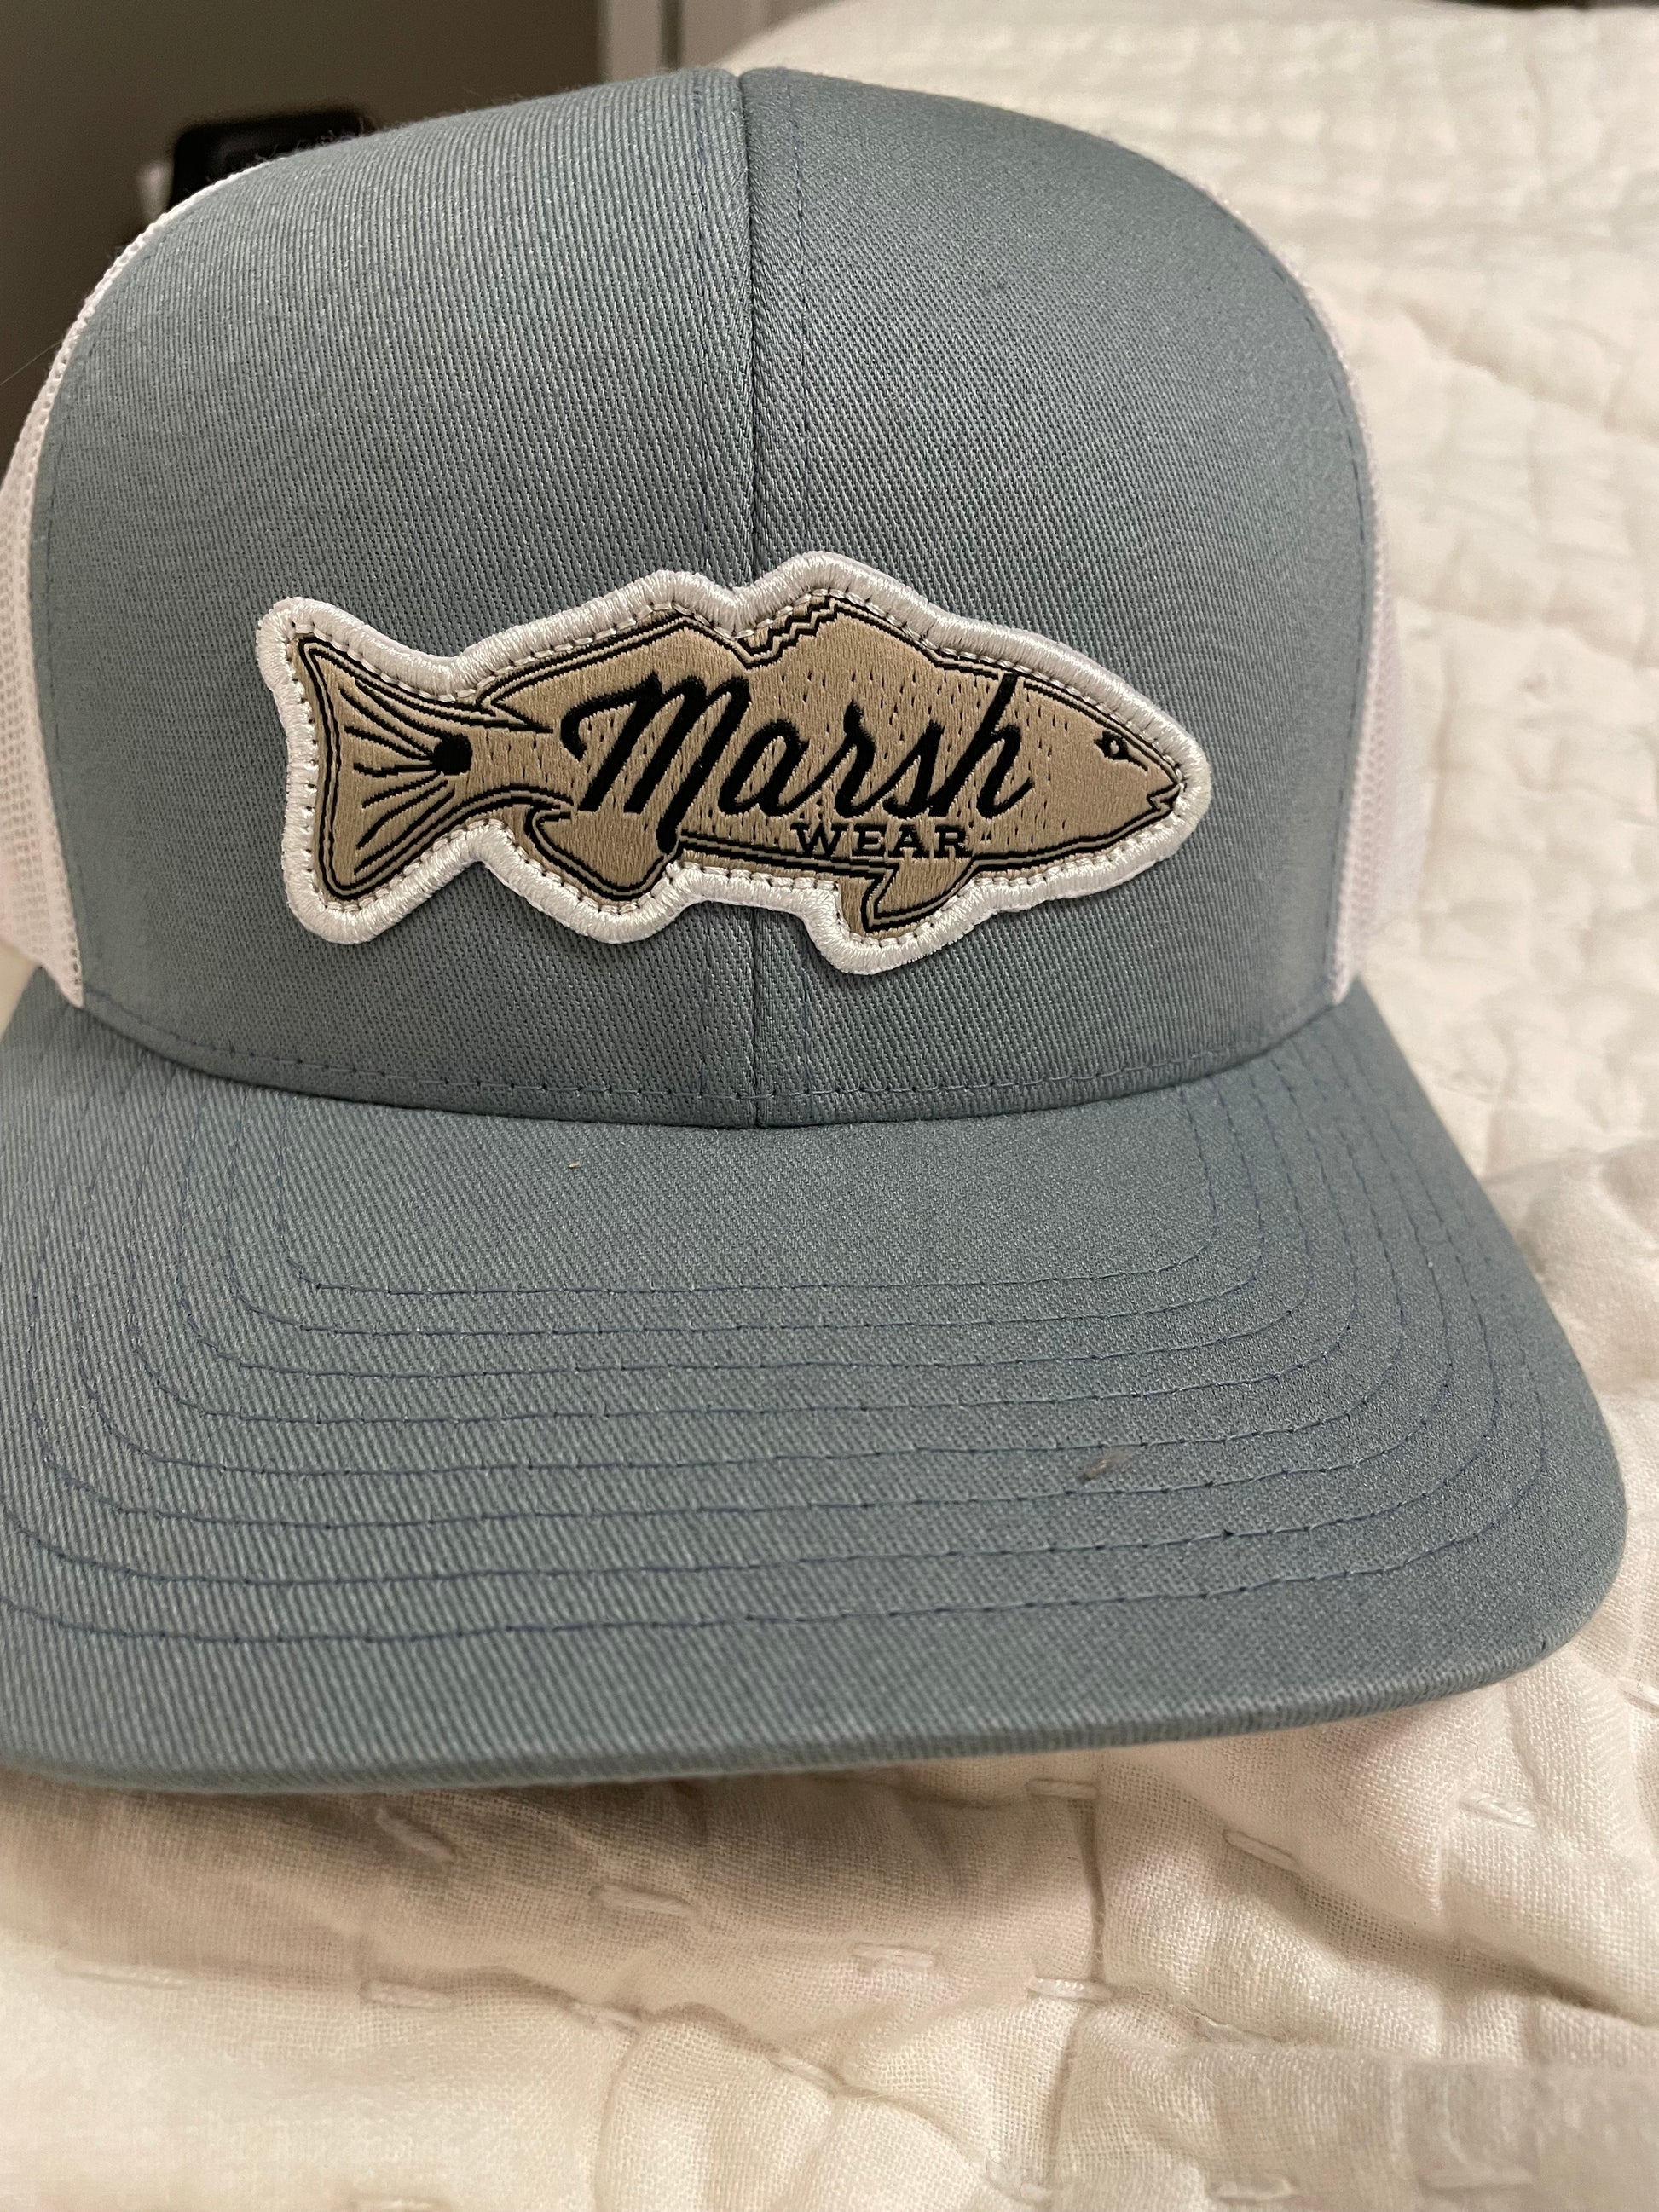 Marsh Wear Redfish Logo Cap - BHI – Coastal Urge